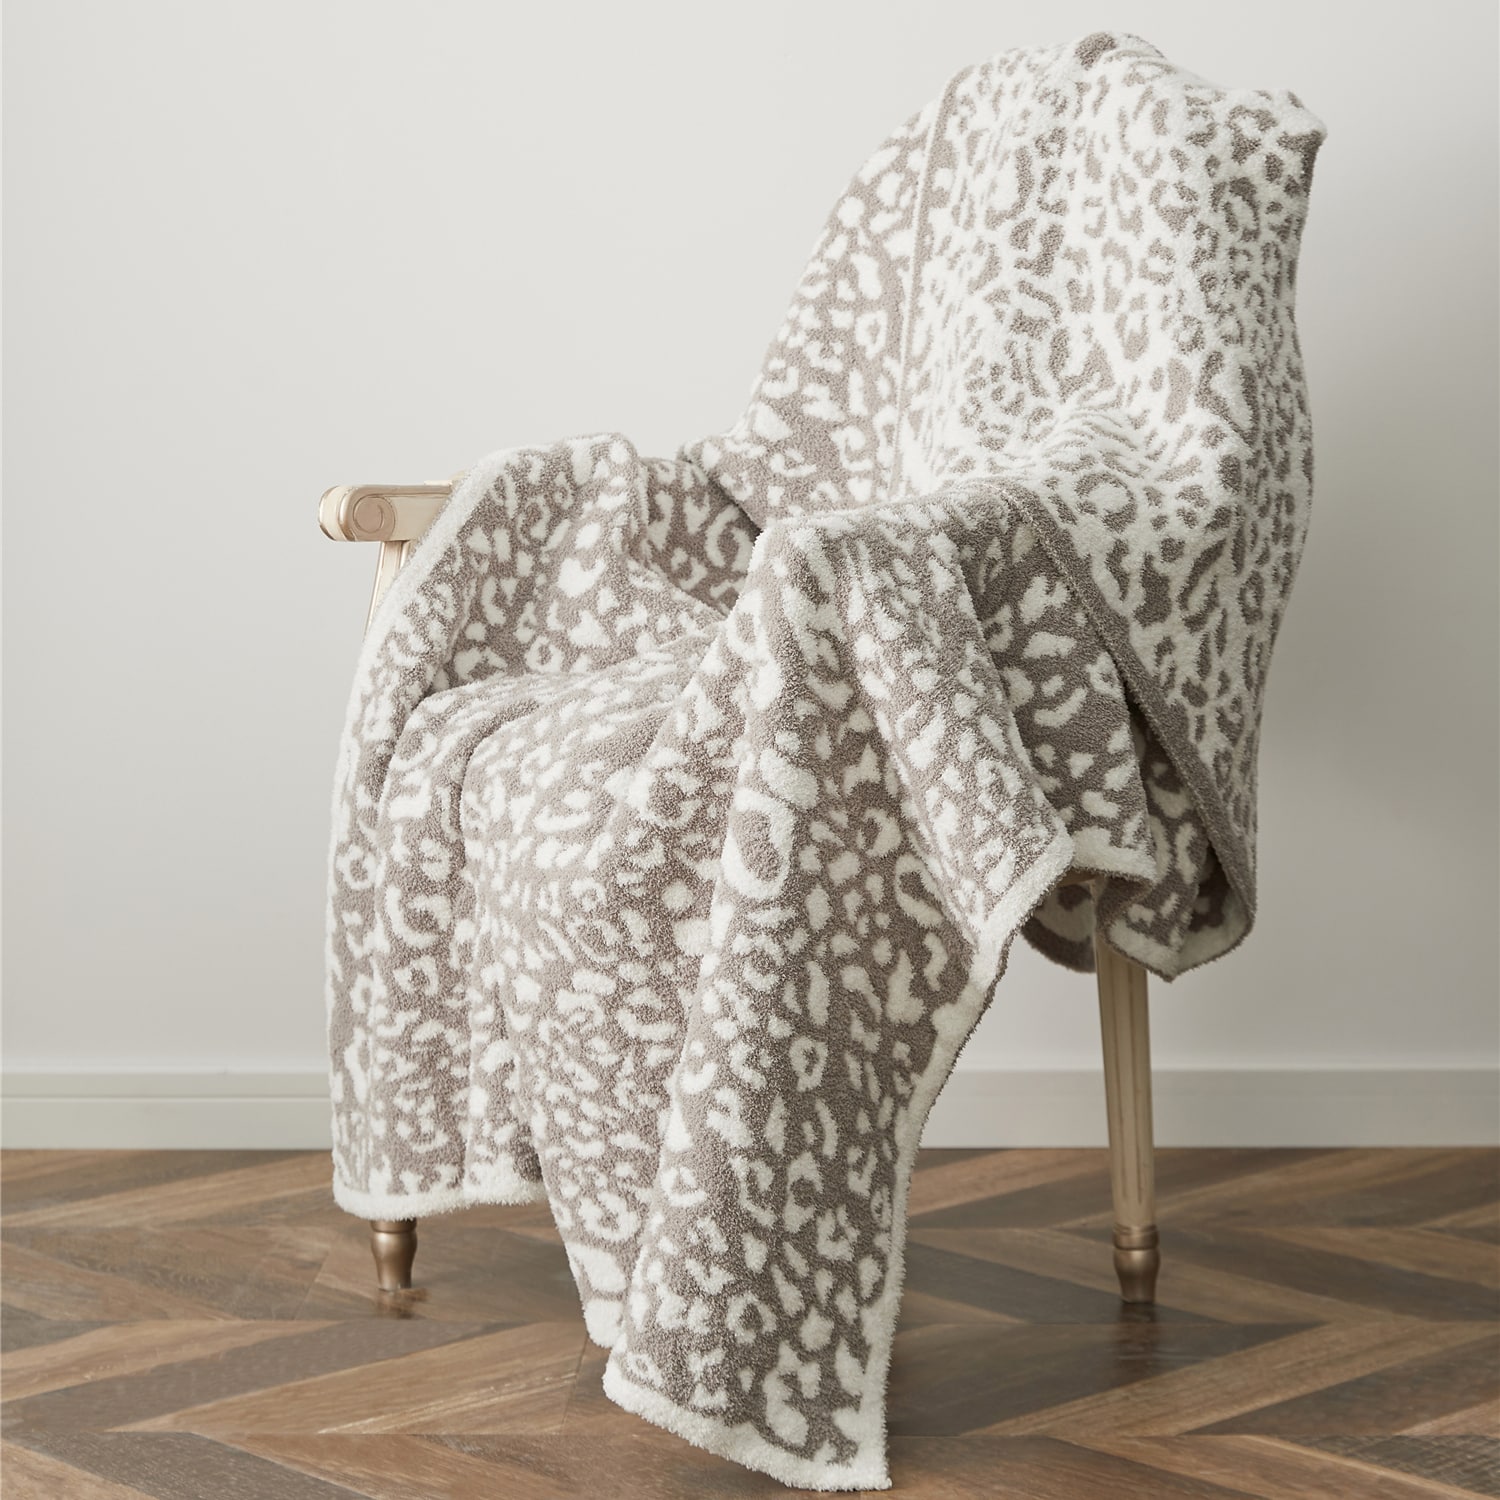 Plaid léopard de couleur gris et blanc posé sur une chaise avec du parquet et devant un mur blanc